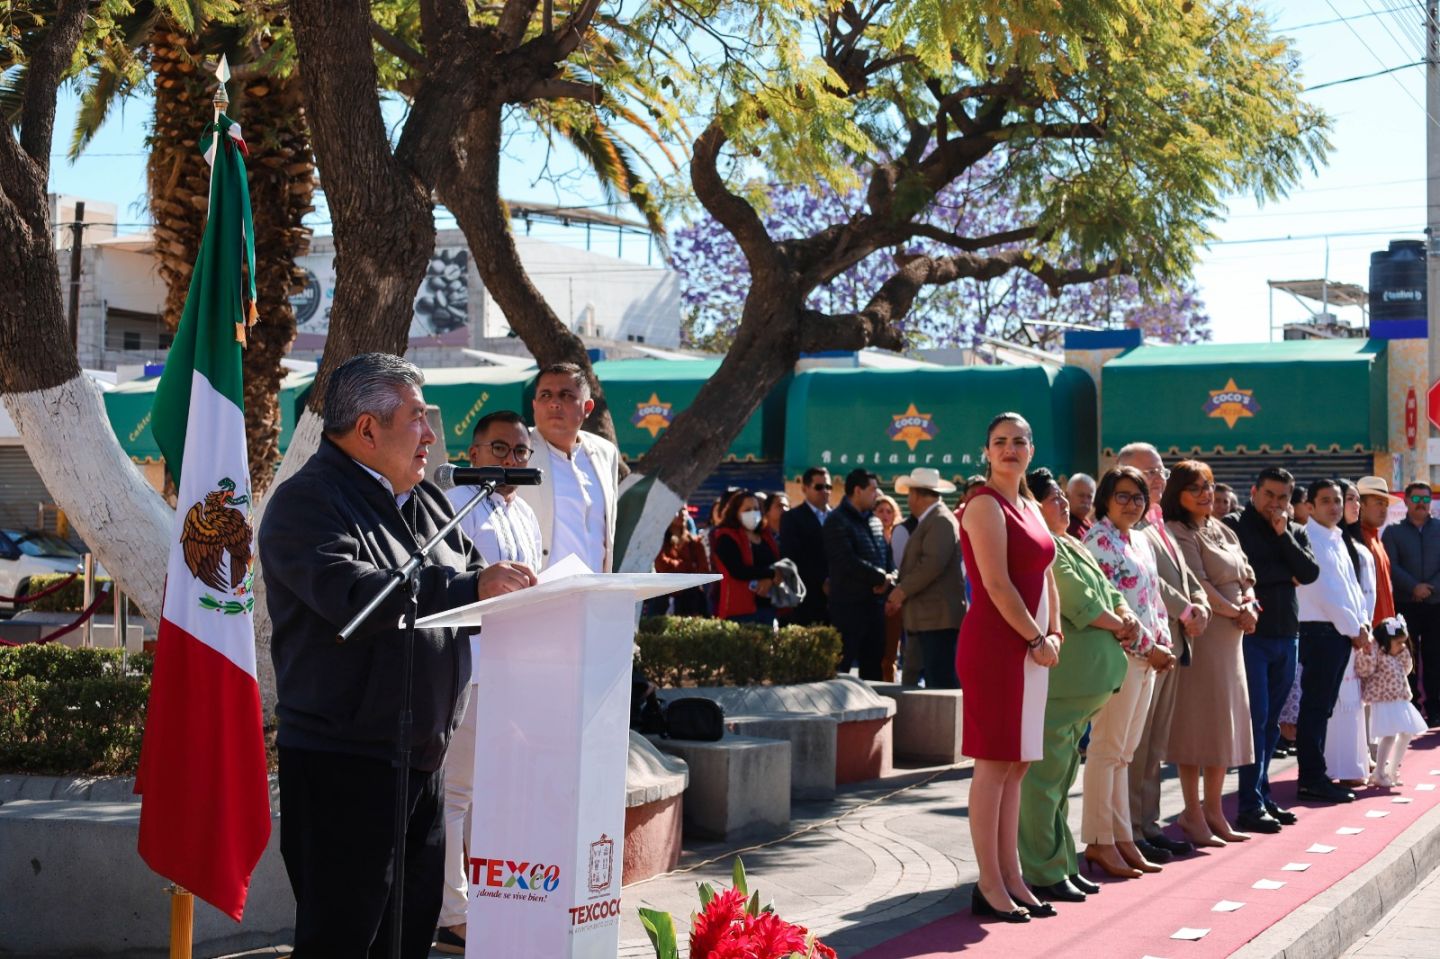 La entrega de cuentas al pueblo es el legado de Benito Juárez, y en Texcoco se sigue al pie de la letra en  obras y acciones a favor de las y los texcocanos
